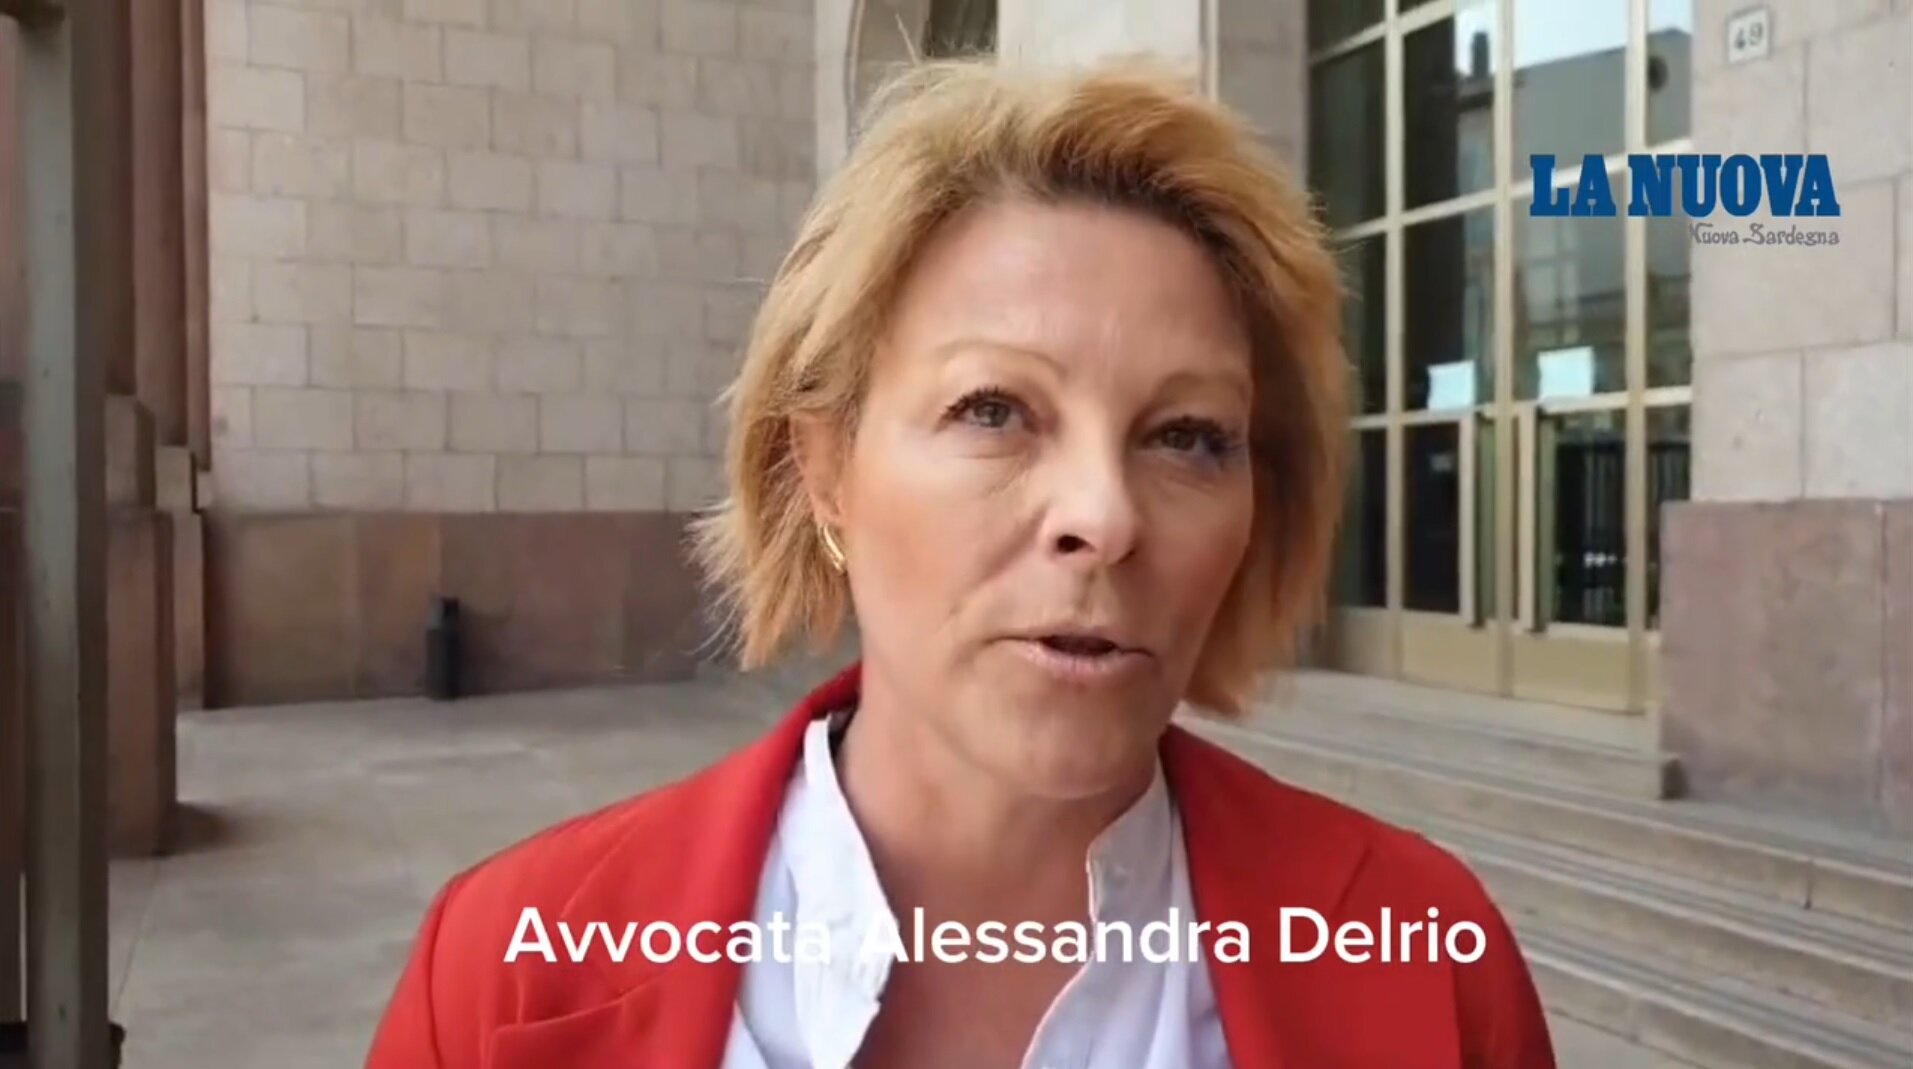 Sassari, l'avvocata Alessandra Delrio dopo l'atto intimidatorio: «Non ho nemici, continuo a fare il mio lavoro»